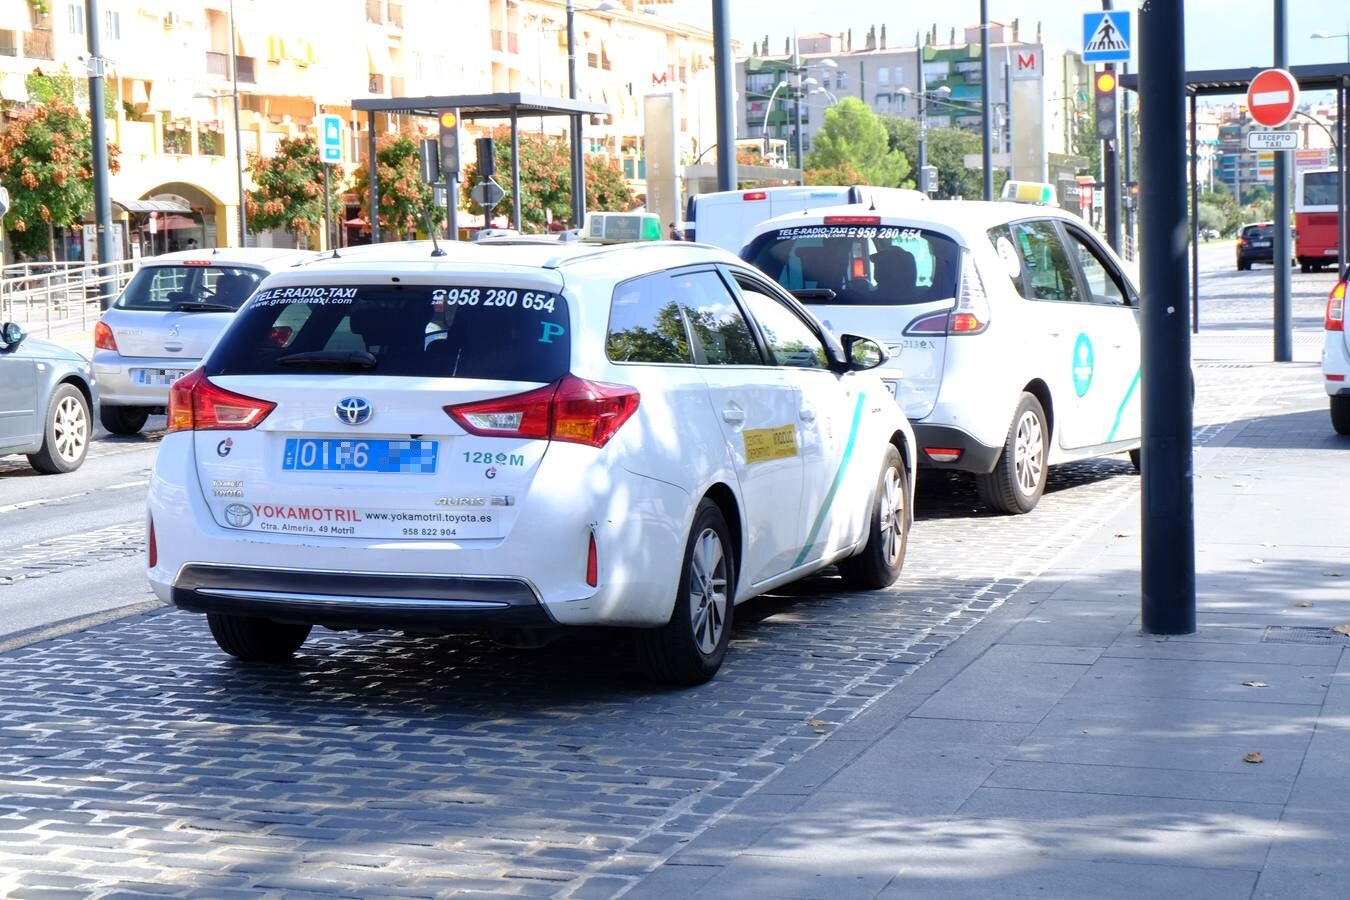 pasatiempo relajarse Aventurero Fotos: Así son las nuevas matrículas de los taxis de Granada: ¿por qué  tienen ahora un color azul? | Ideal